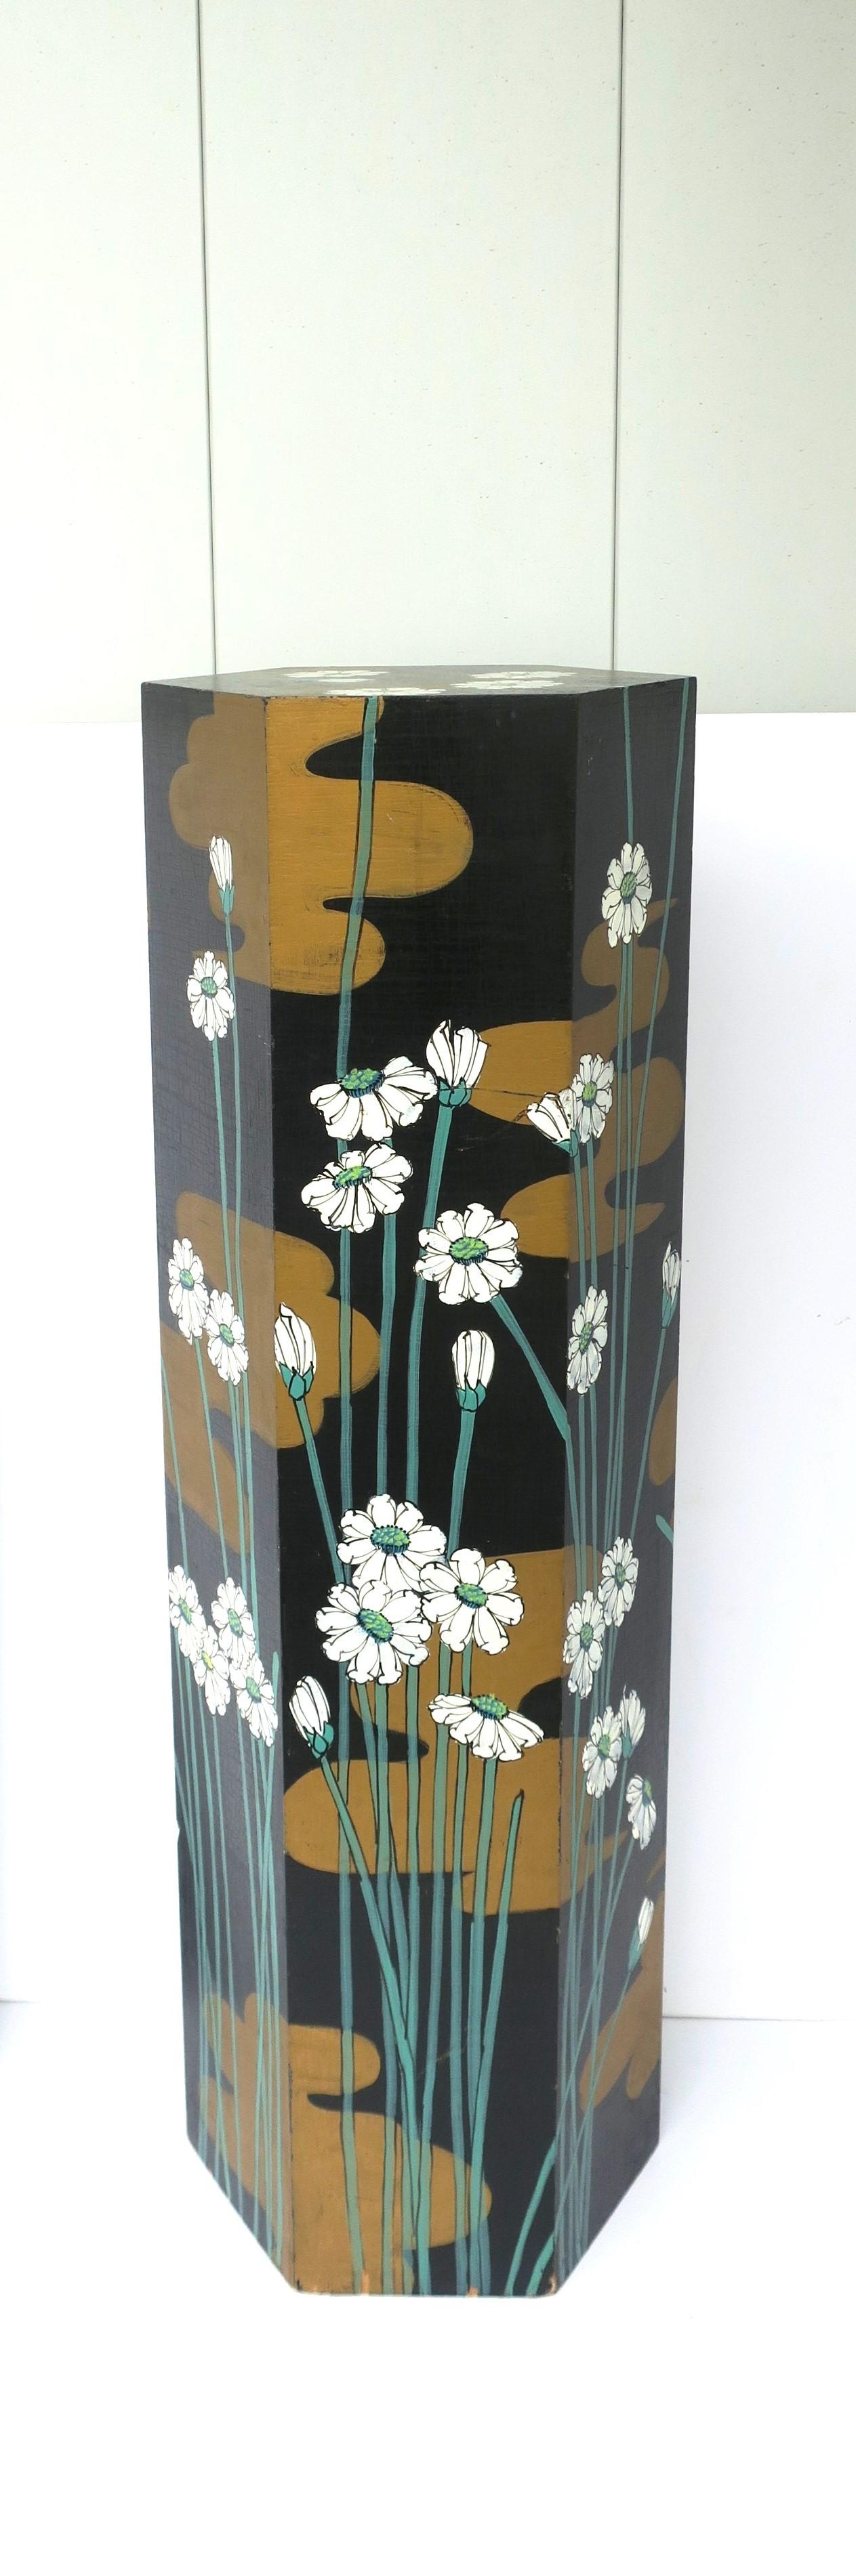 Säulenständer aus Holz im Jugendstil, ca. Mitte des 20. Jahrhunderts. Dieser Holzsäulenständer ist handbemalt mit wunderschönen Lilienpads und -blumen in Sechseckform (eine schöne Alternative zu rund oder quadratisch). Lilienpads und -blumen